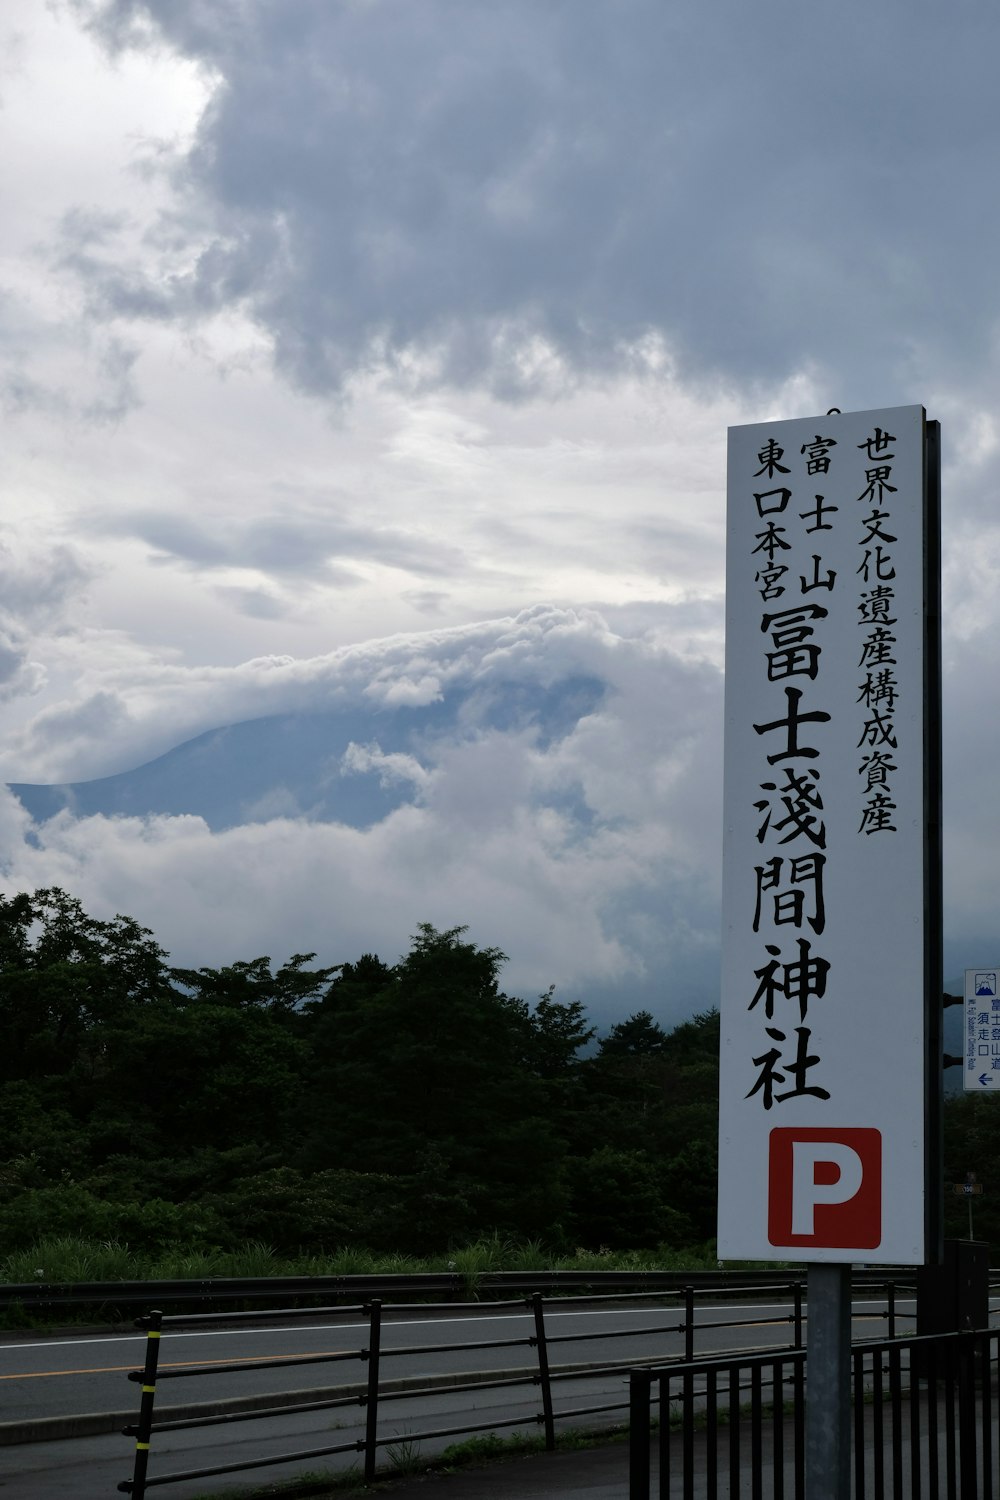 Un letrero de la calle con una montaña en el fondo